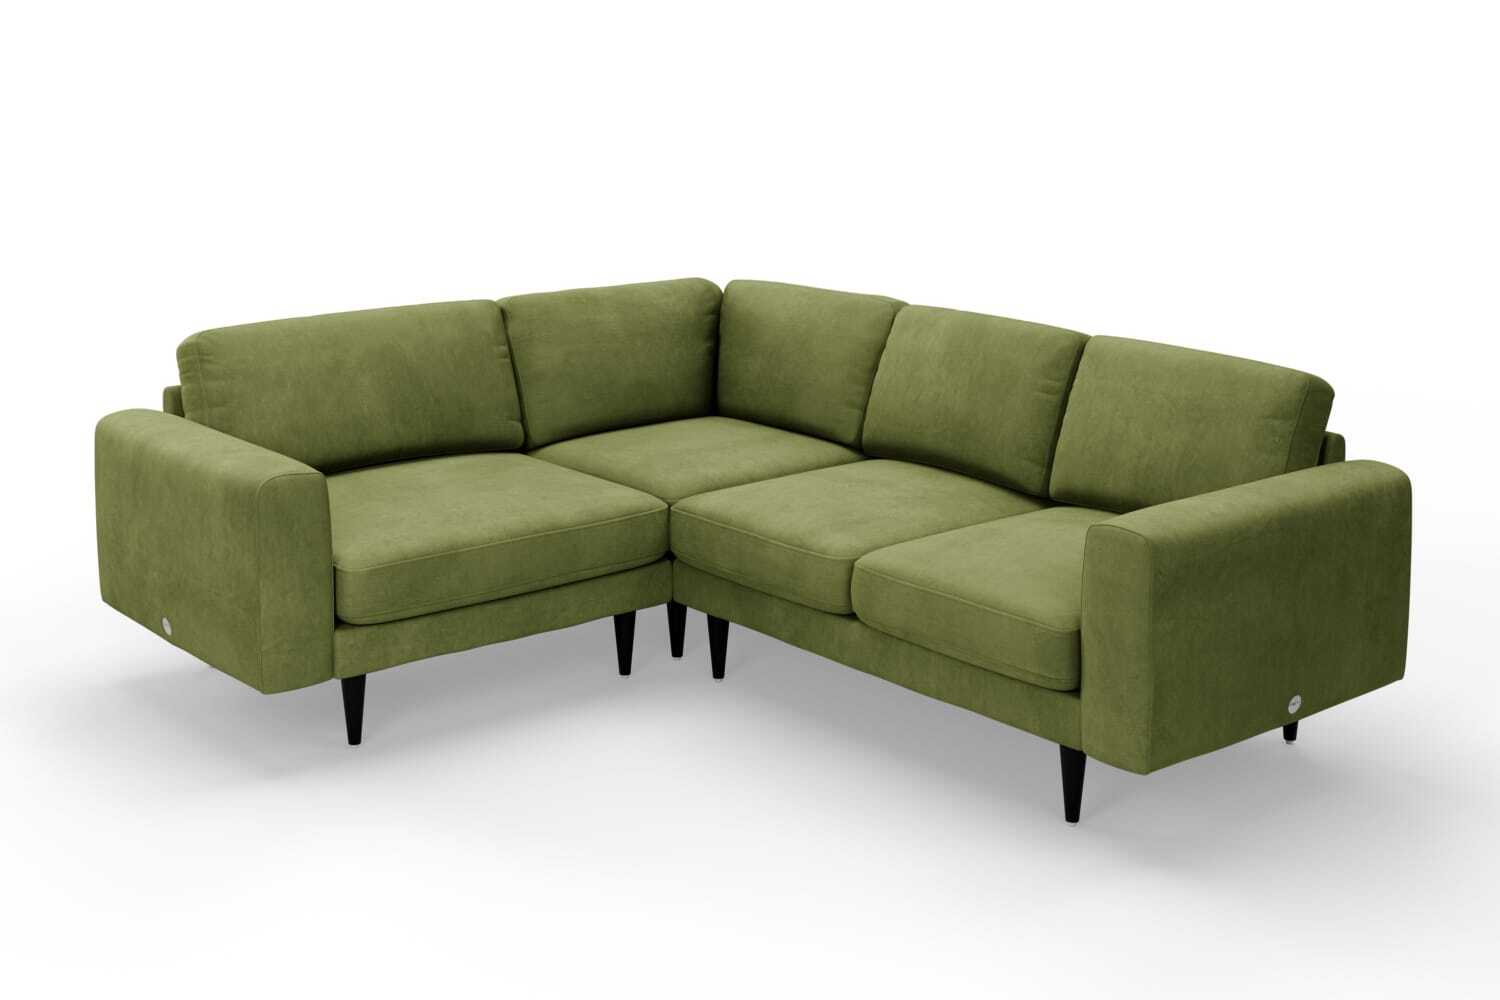 SNUG | The Big Chill Corner Sofa Small in Olive